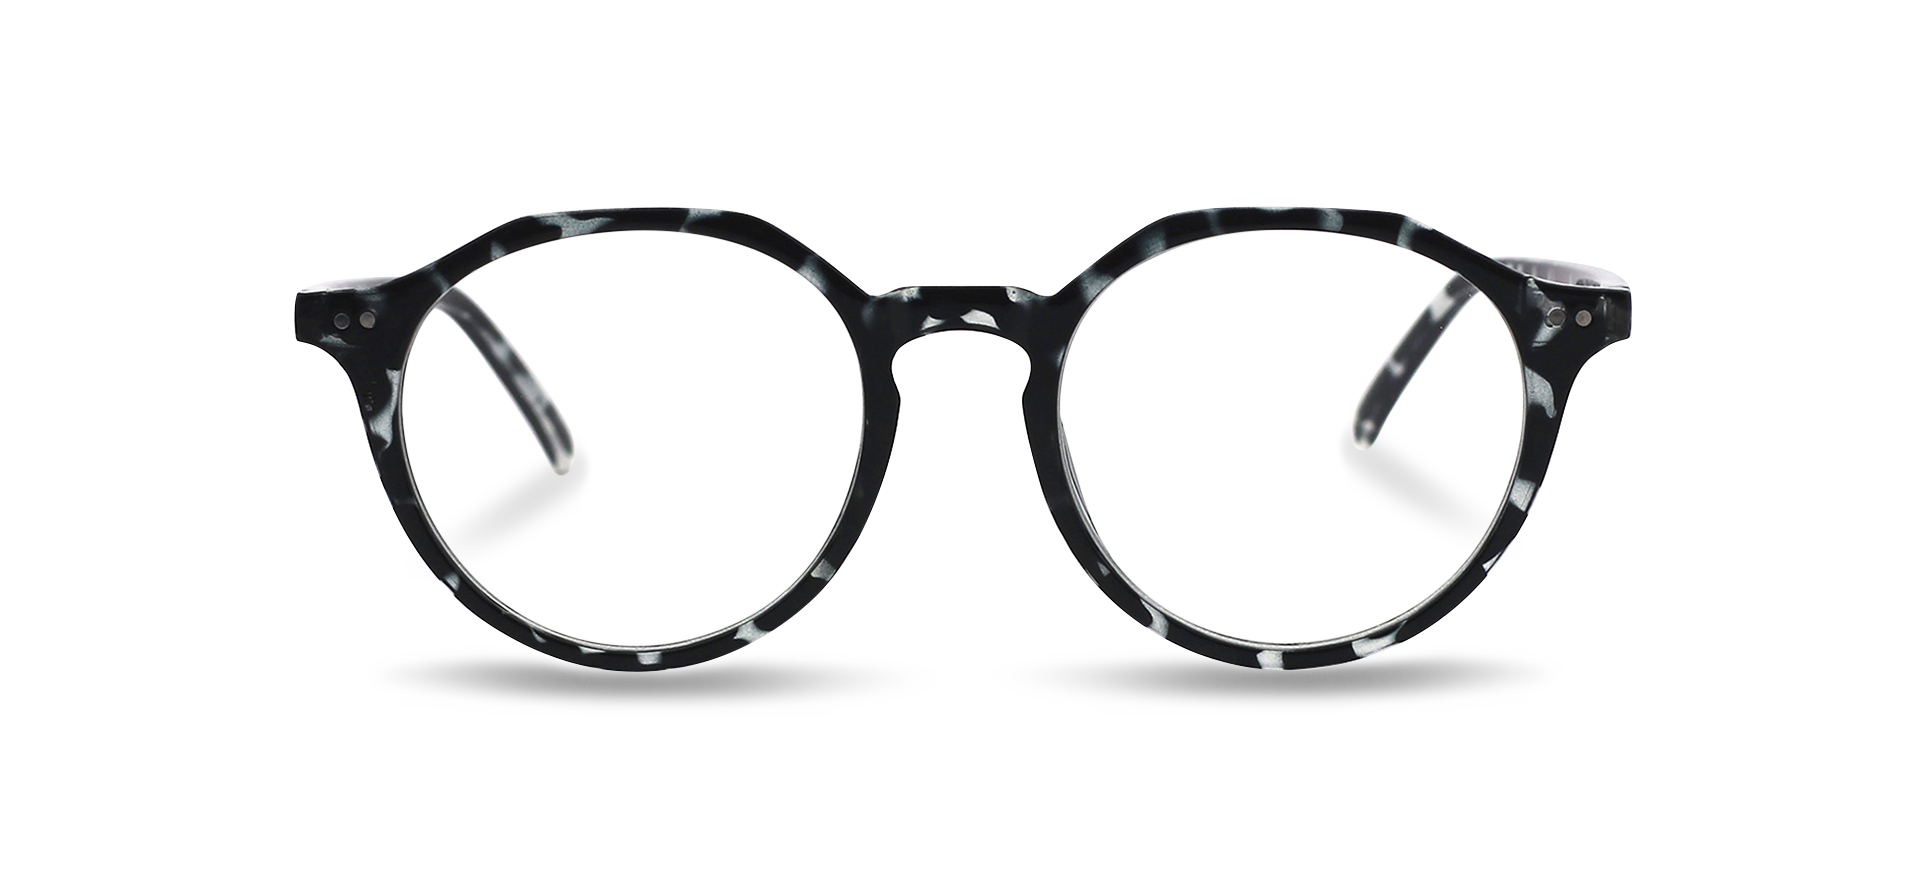 Kacamata antik berwarna biru muda